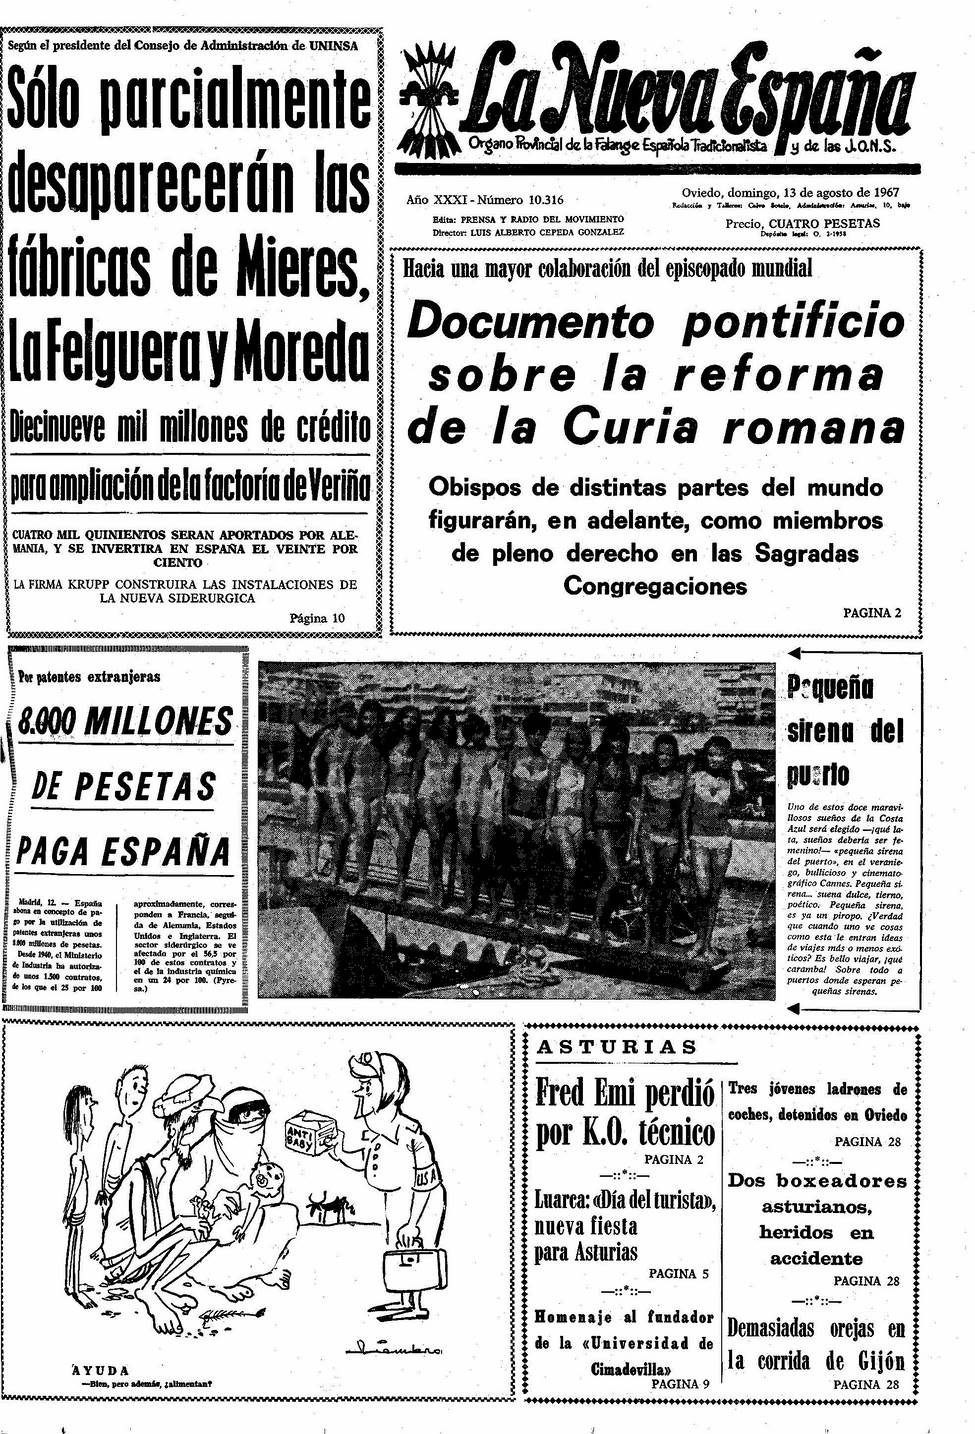 Portada del Domingo, 13 de Agosto de 1967